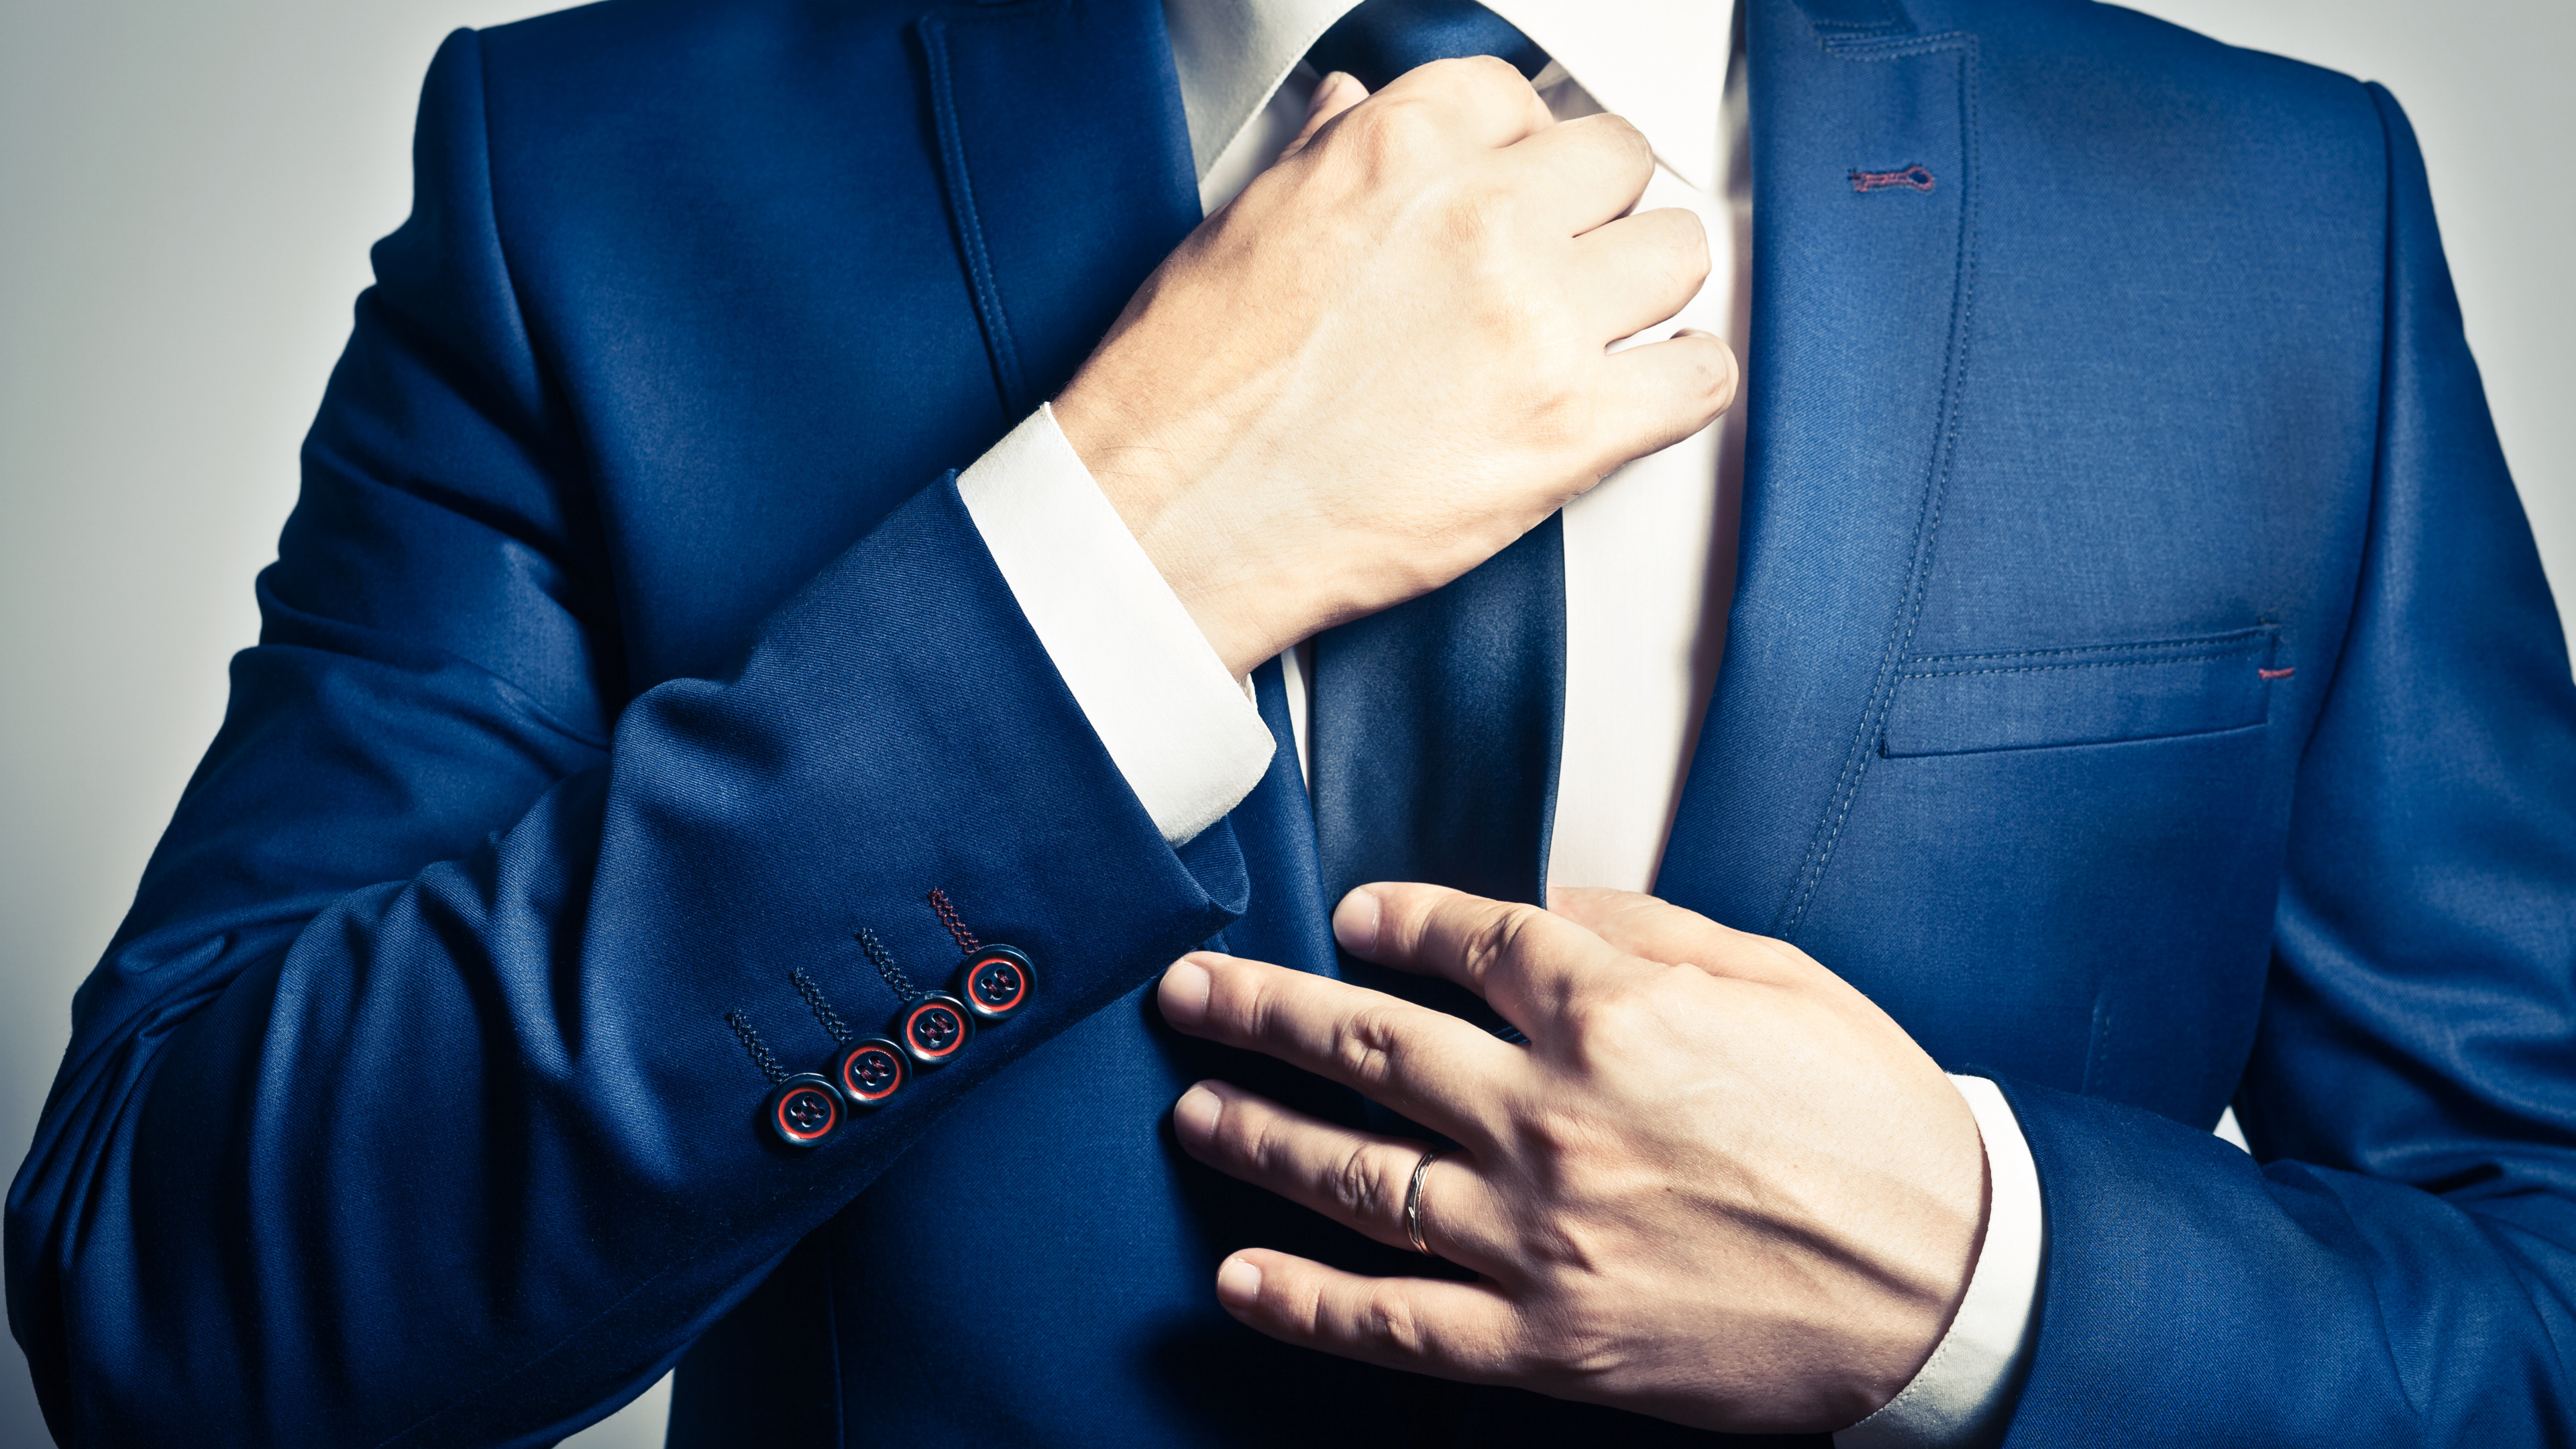 Necktie, Suit, Tuxedo, Blue, Formal Wear. Wallpaper in 3840x2160 Resolution